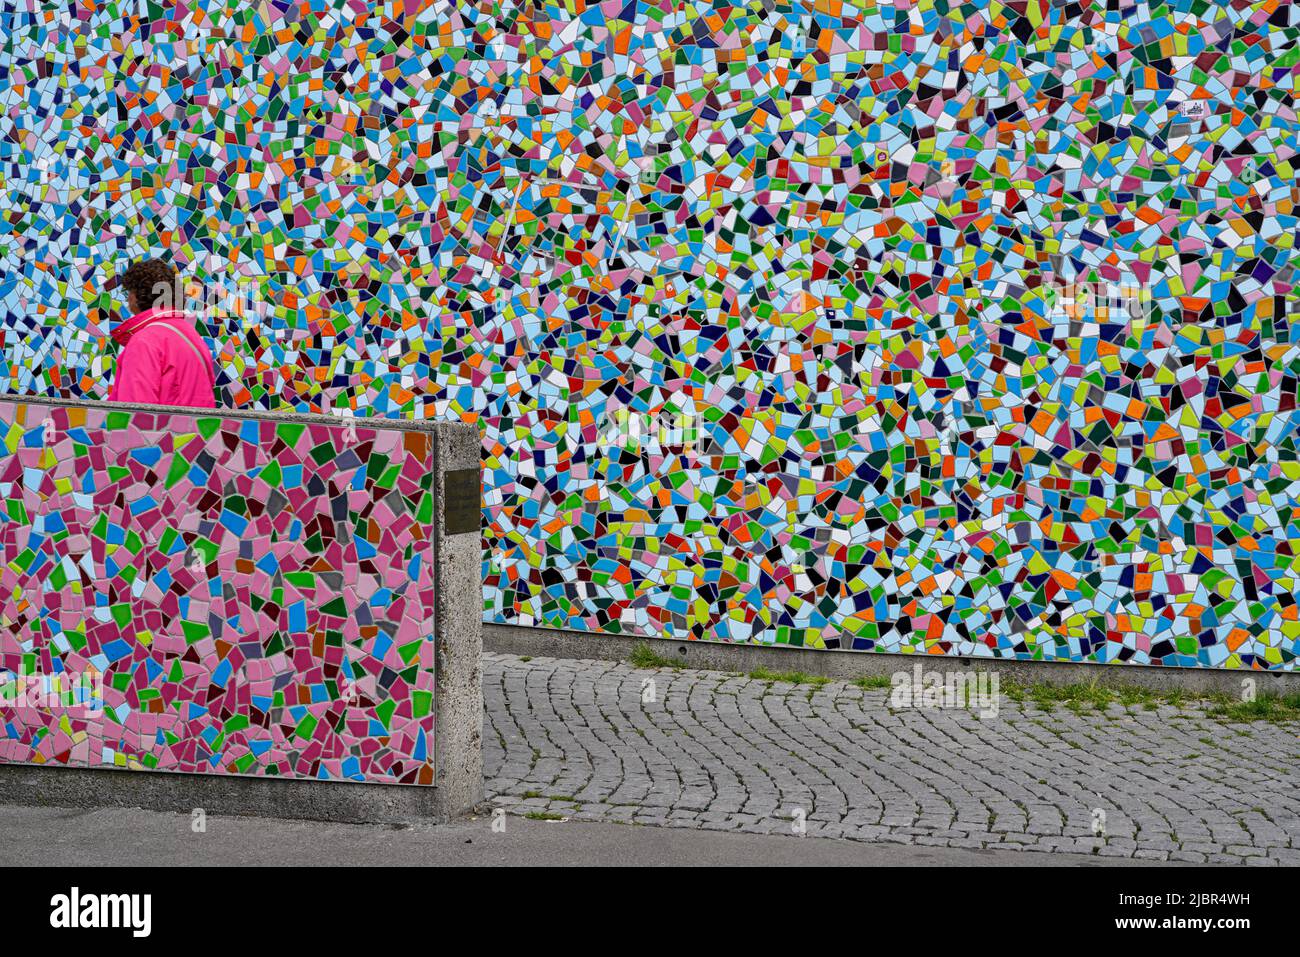 Frau in roter Jacke passiert das farbenfrohe Keramik-Mosaik-Kunstwerk Rivertime von Hermann-Josef Kuhna in Düsseldorf, Nordrhein-Westfalen, Deutschland 24.5.22 Stockfoto